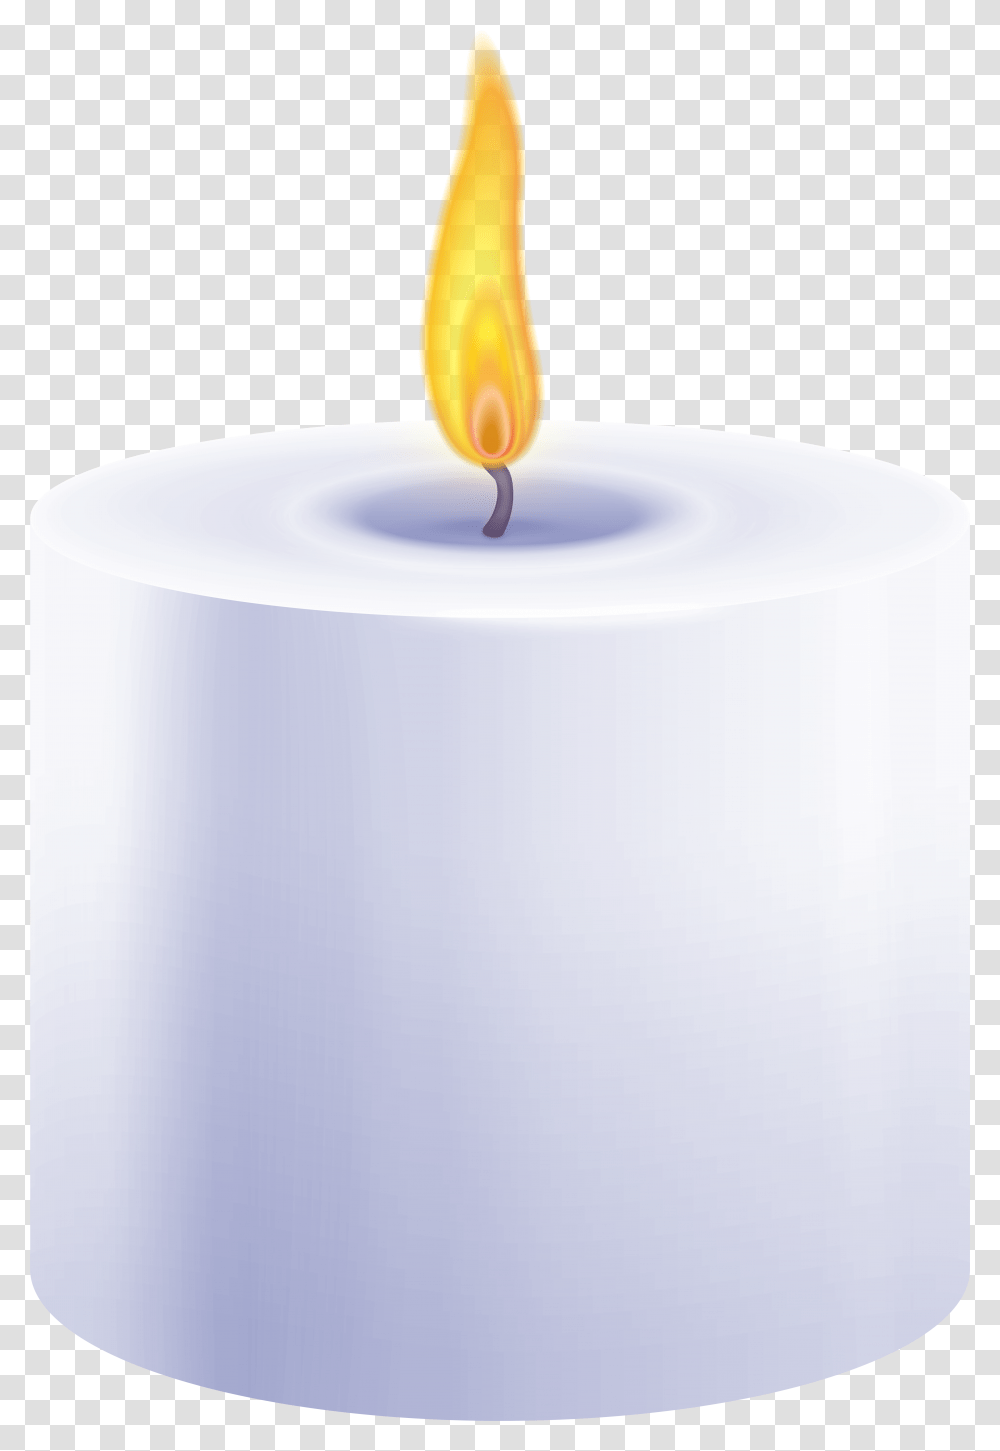 Purple Pillar Candle Clip Art Background Candle Clip Art Transparent Png